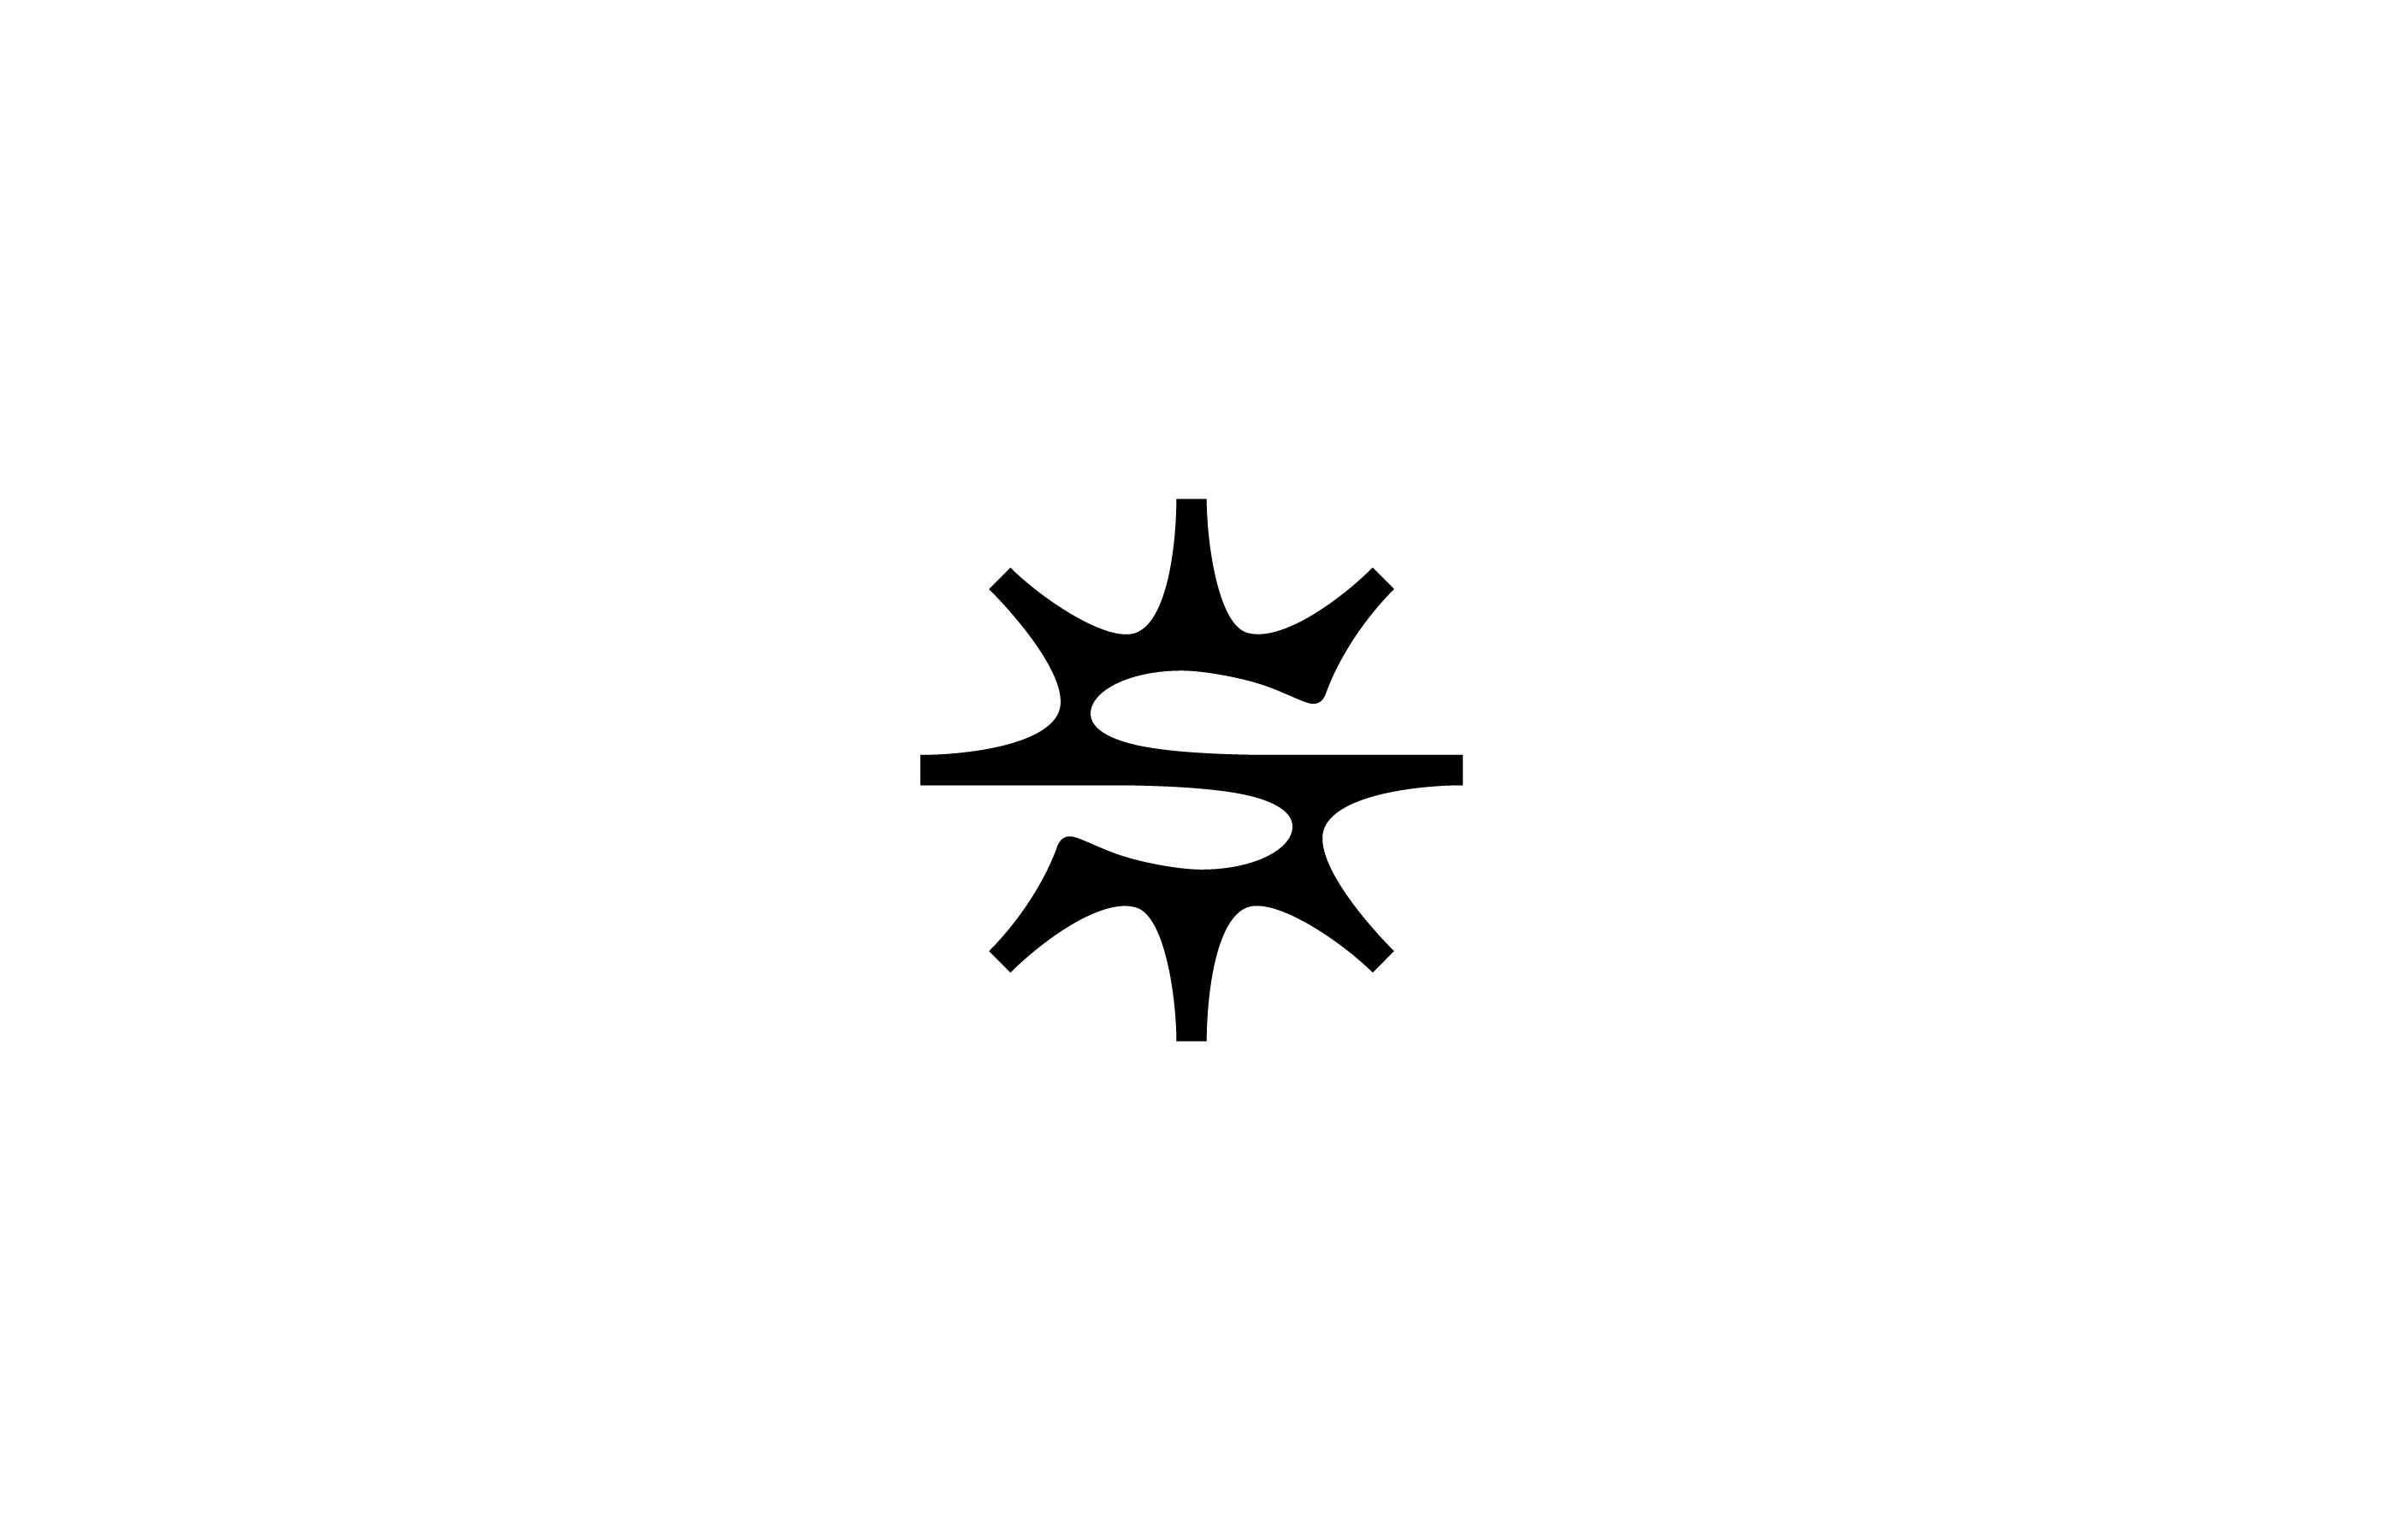 leter s star shine sun logo design mark symbol timeless